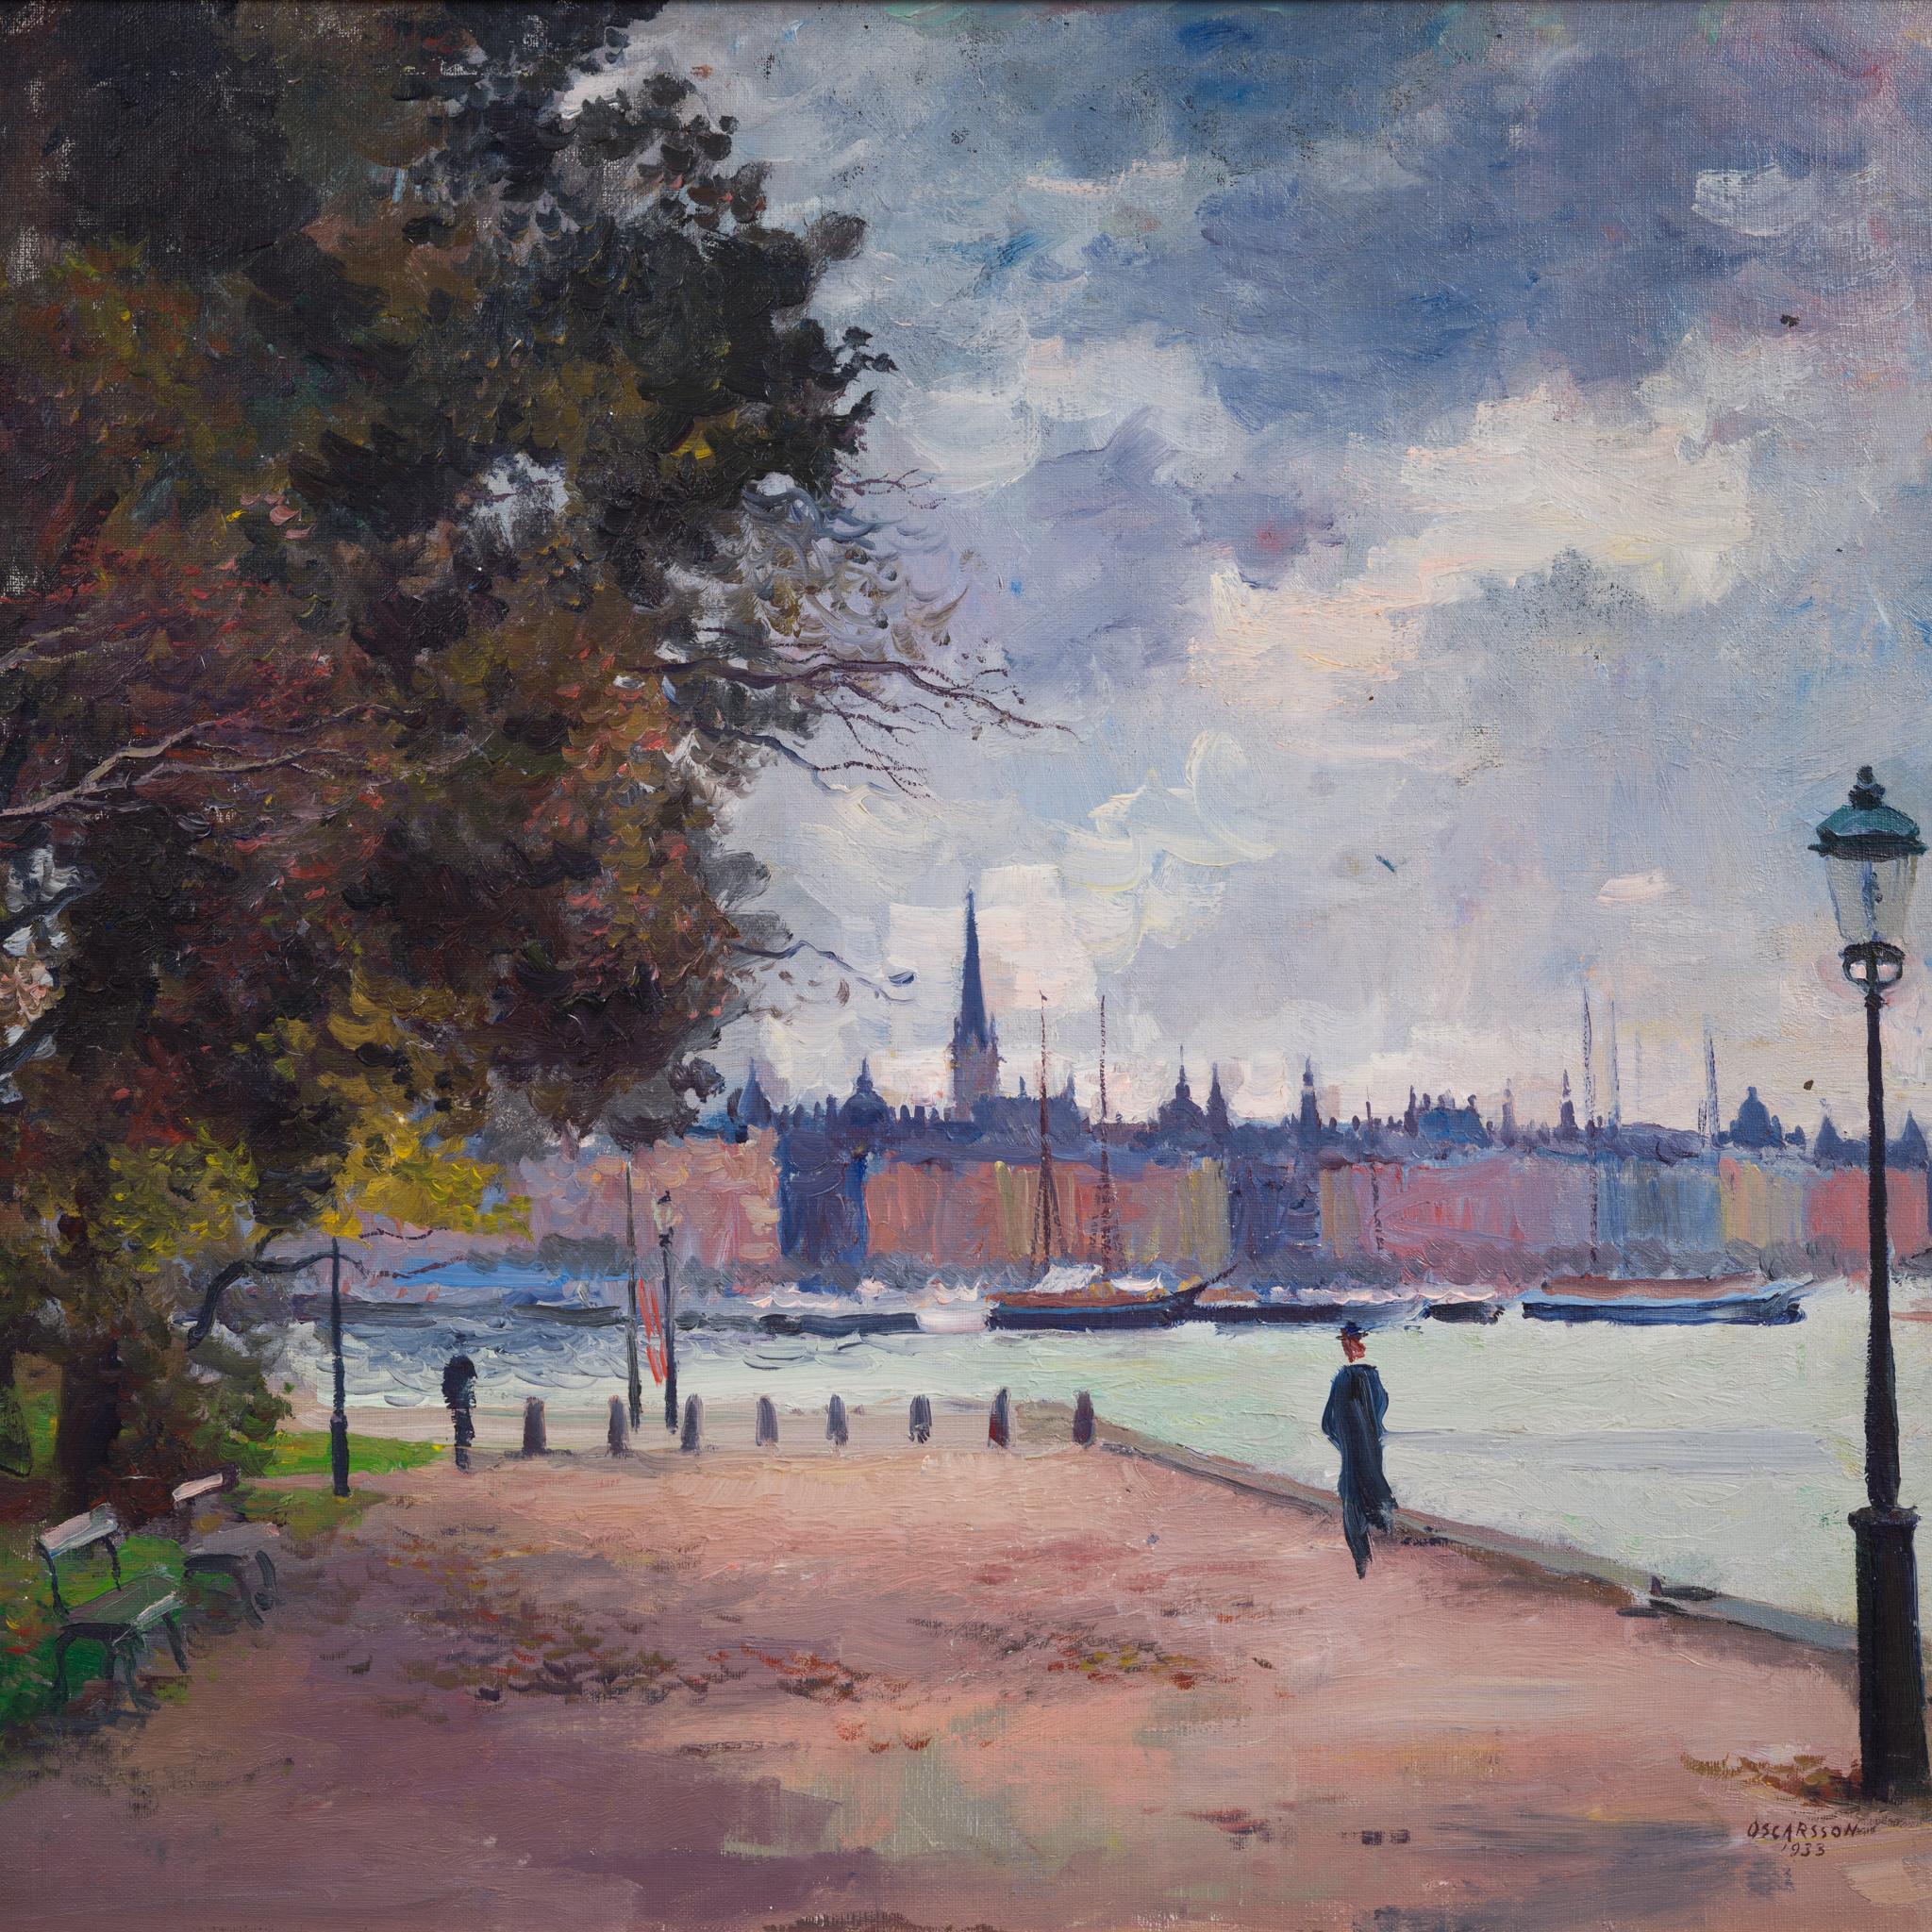 Impressionistischer Blick über Strandvägen, Stockholm – Painting von Bernhard Oscarsson